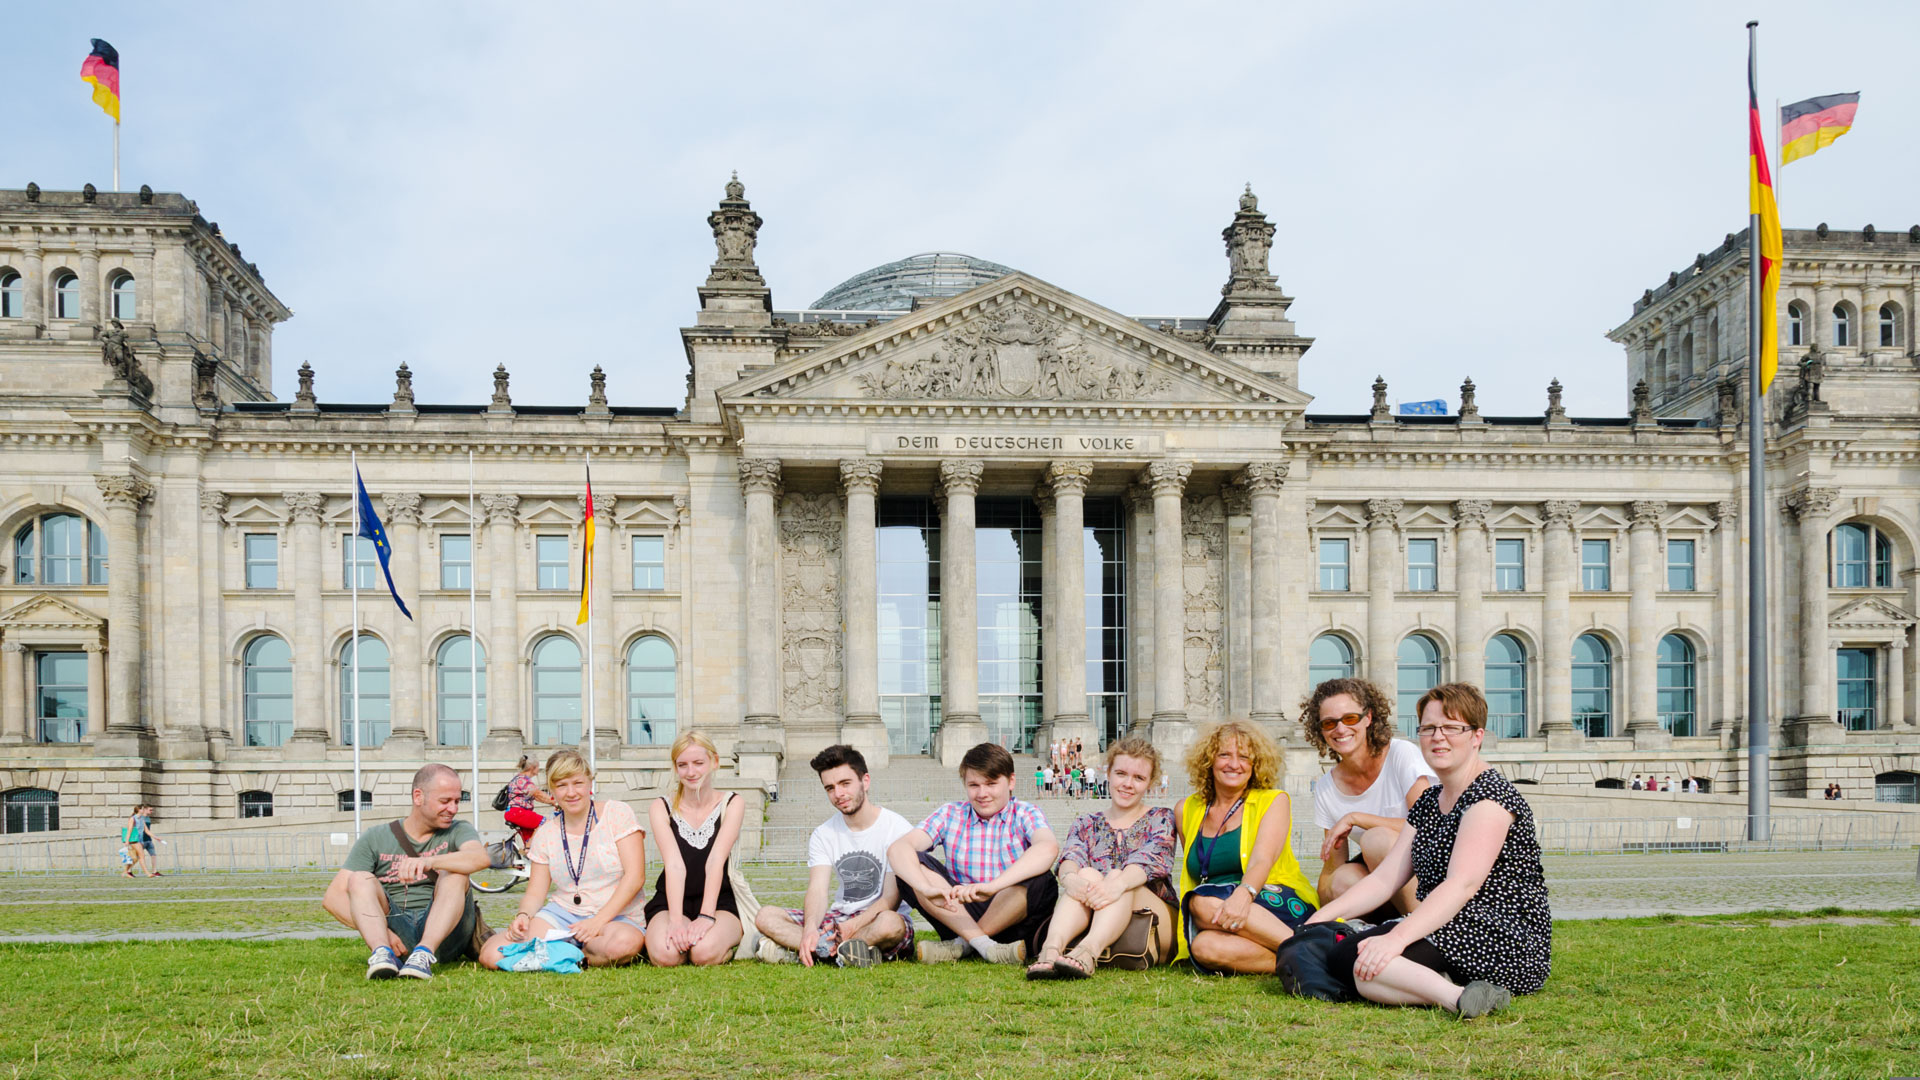 Des promenades en ville, ici vers le Reichstag, font partie du programme de loisirs.